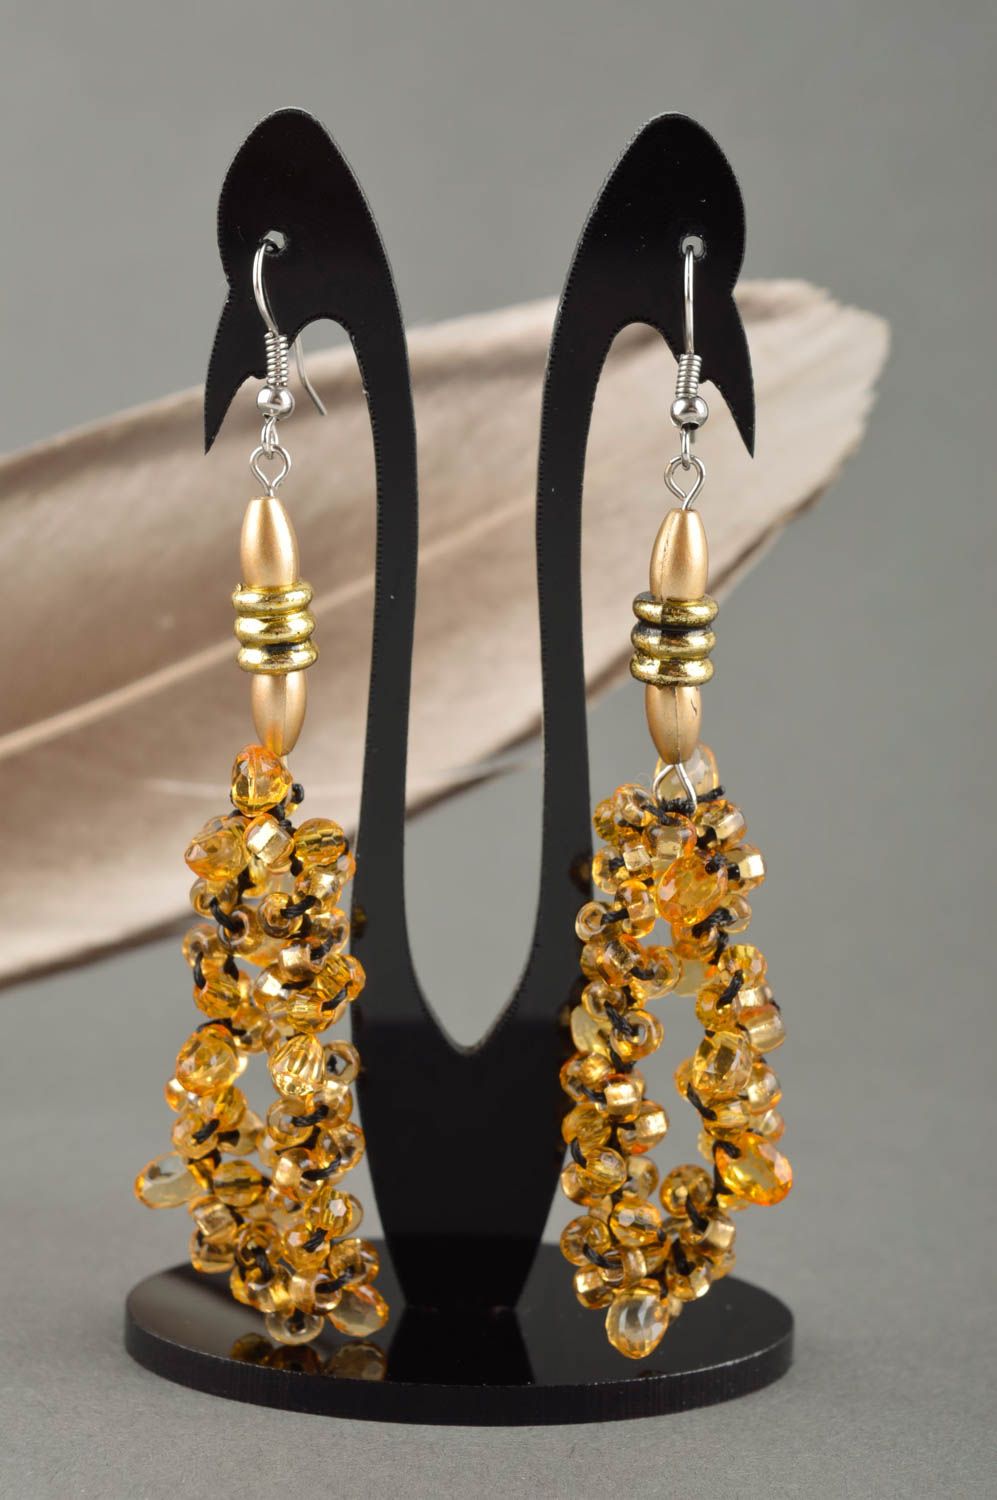 Schöne Ohrringe grelle handgemachte Ohrringe tolle Geschenk Idee für Frauen foto 1